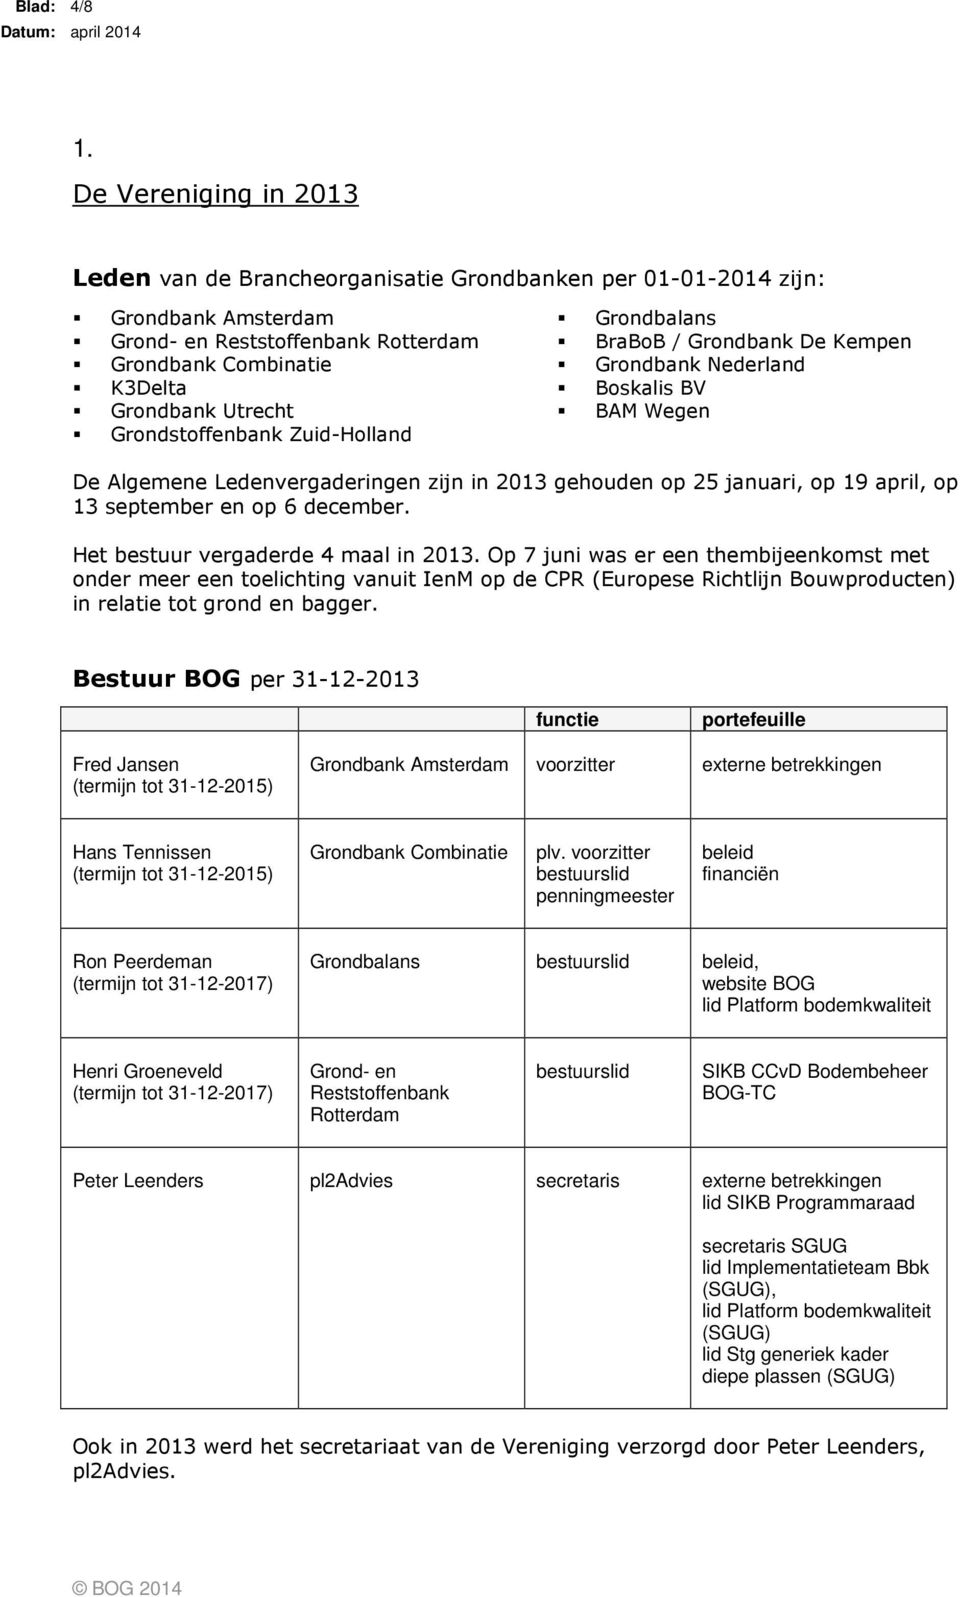 Grondstoffenbank Zuid-Holland Grondbalans BraBoB / Grondbank De Kempen Grondbank Nederland Boskalis BV BAM Wegen De Algemene Ledenvergaderingen zijn in 2013 gehouden op 25 januari, op 19 april, op 13